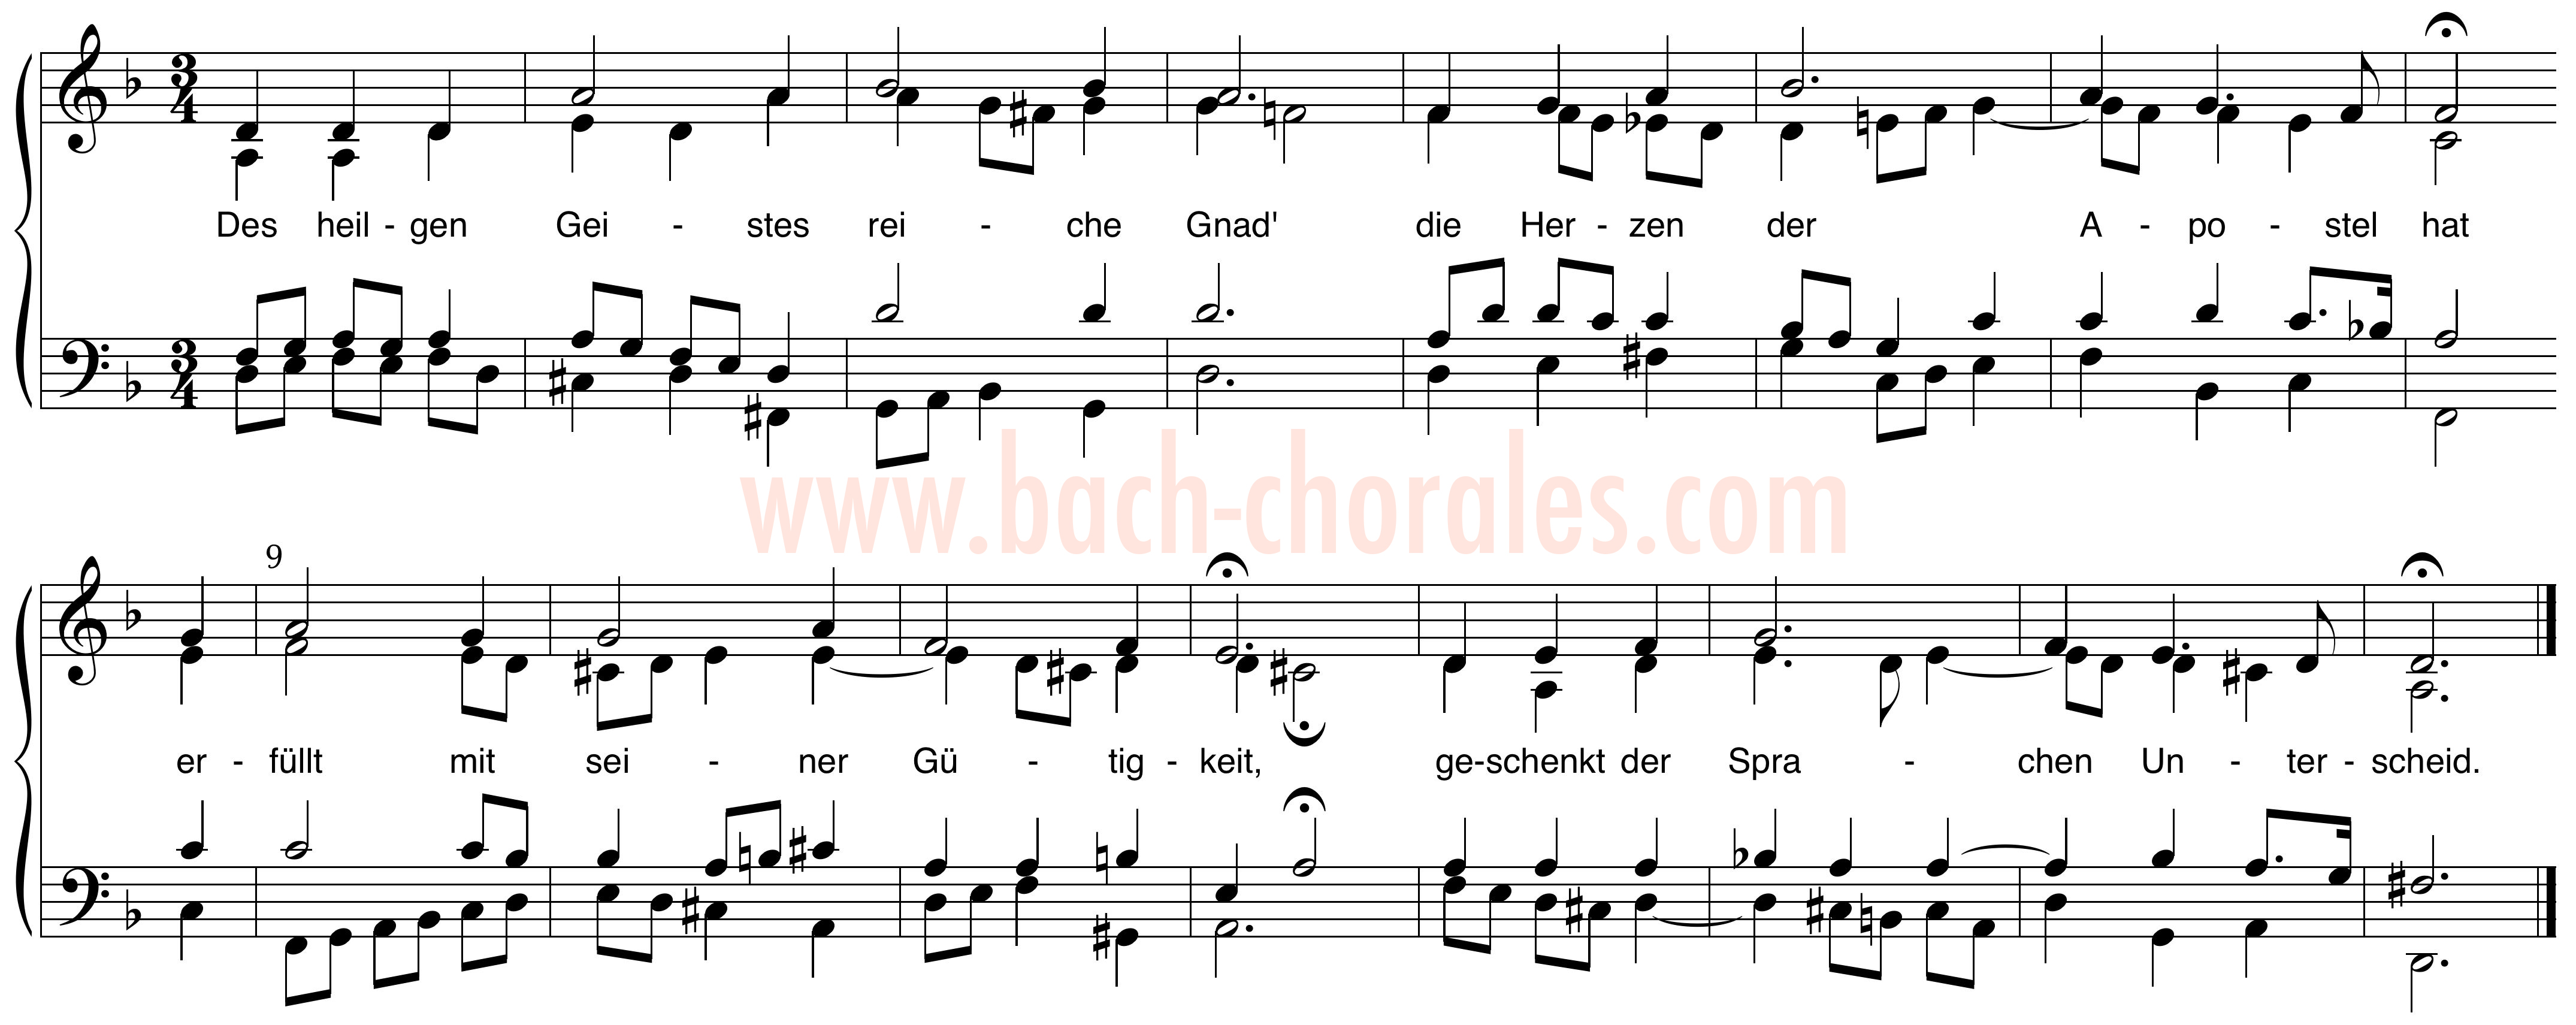 notenbeeld BWV 295 op https://www.bach-chorales.com/